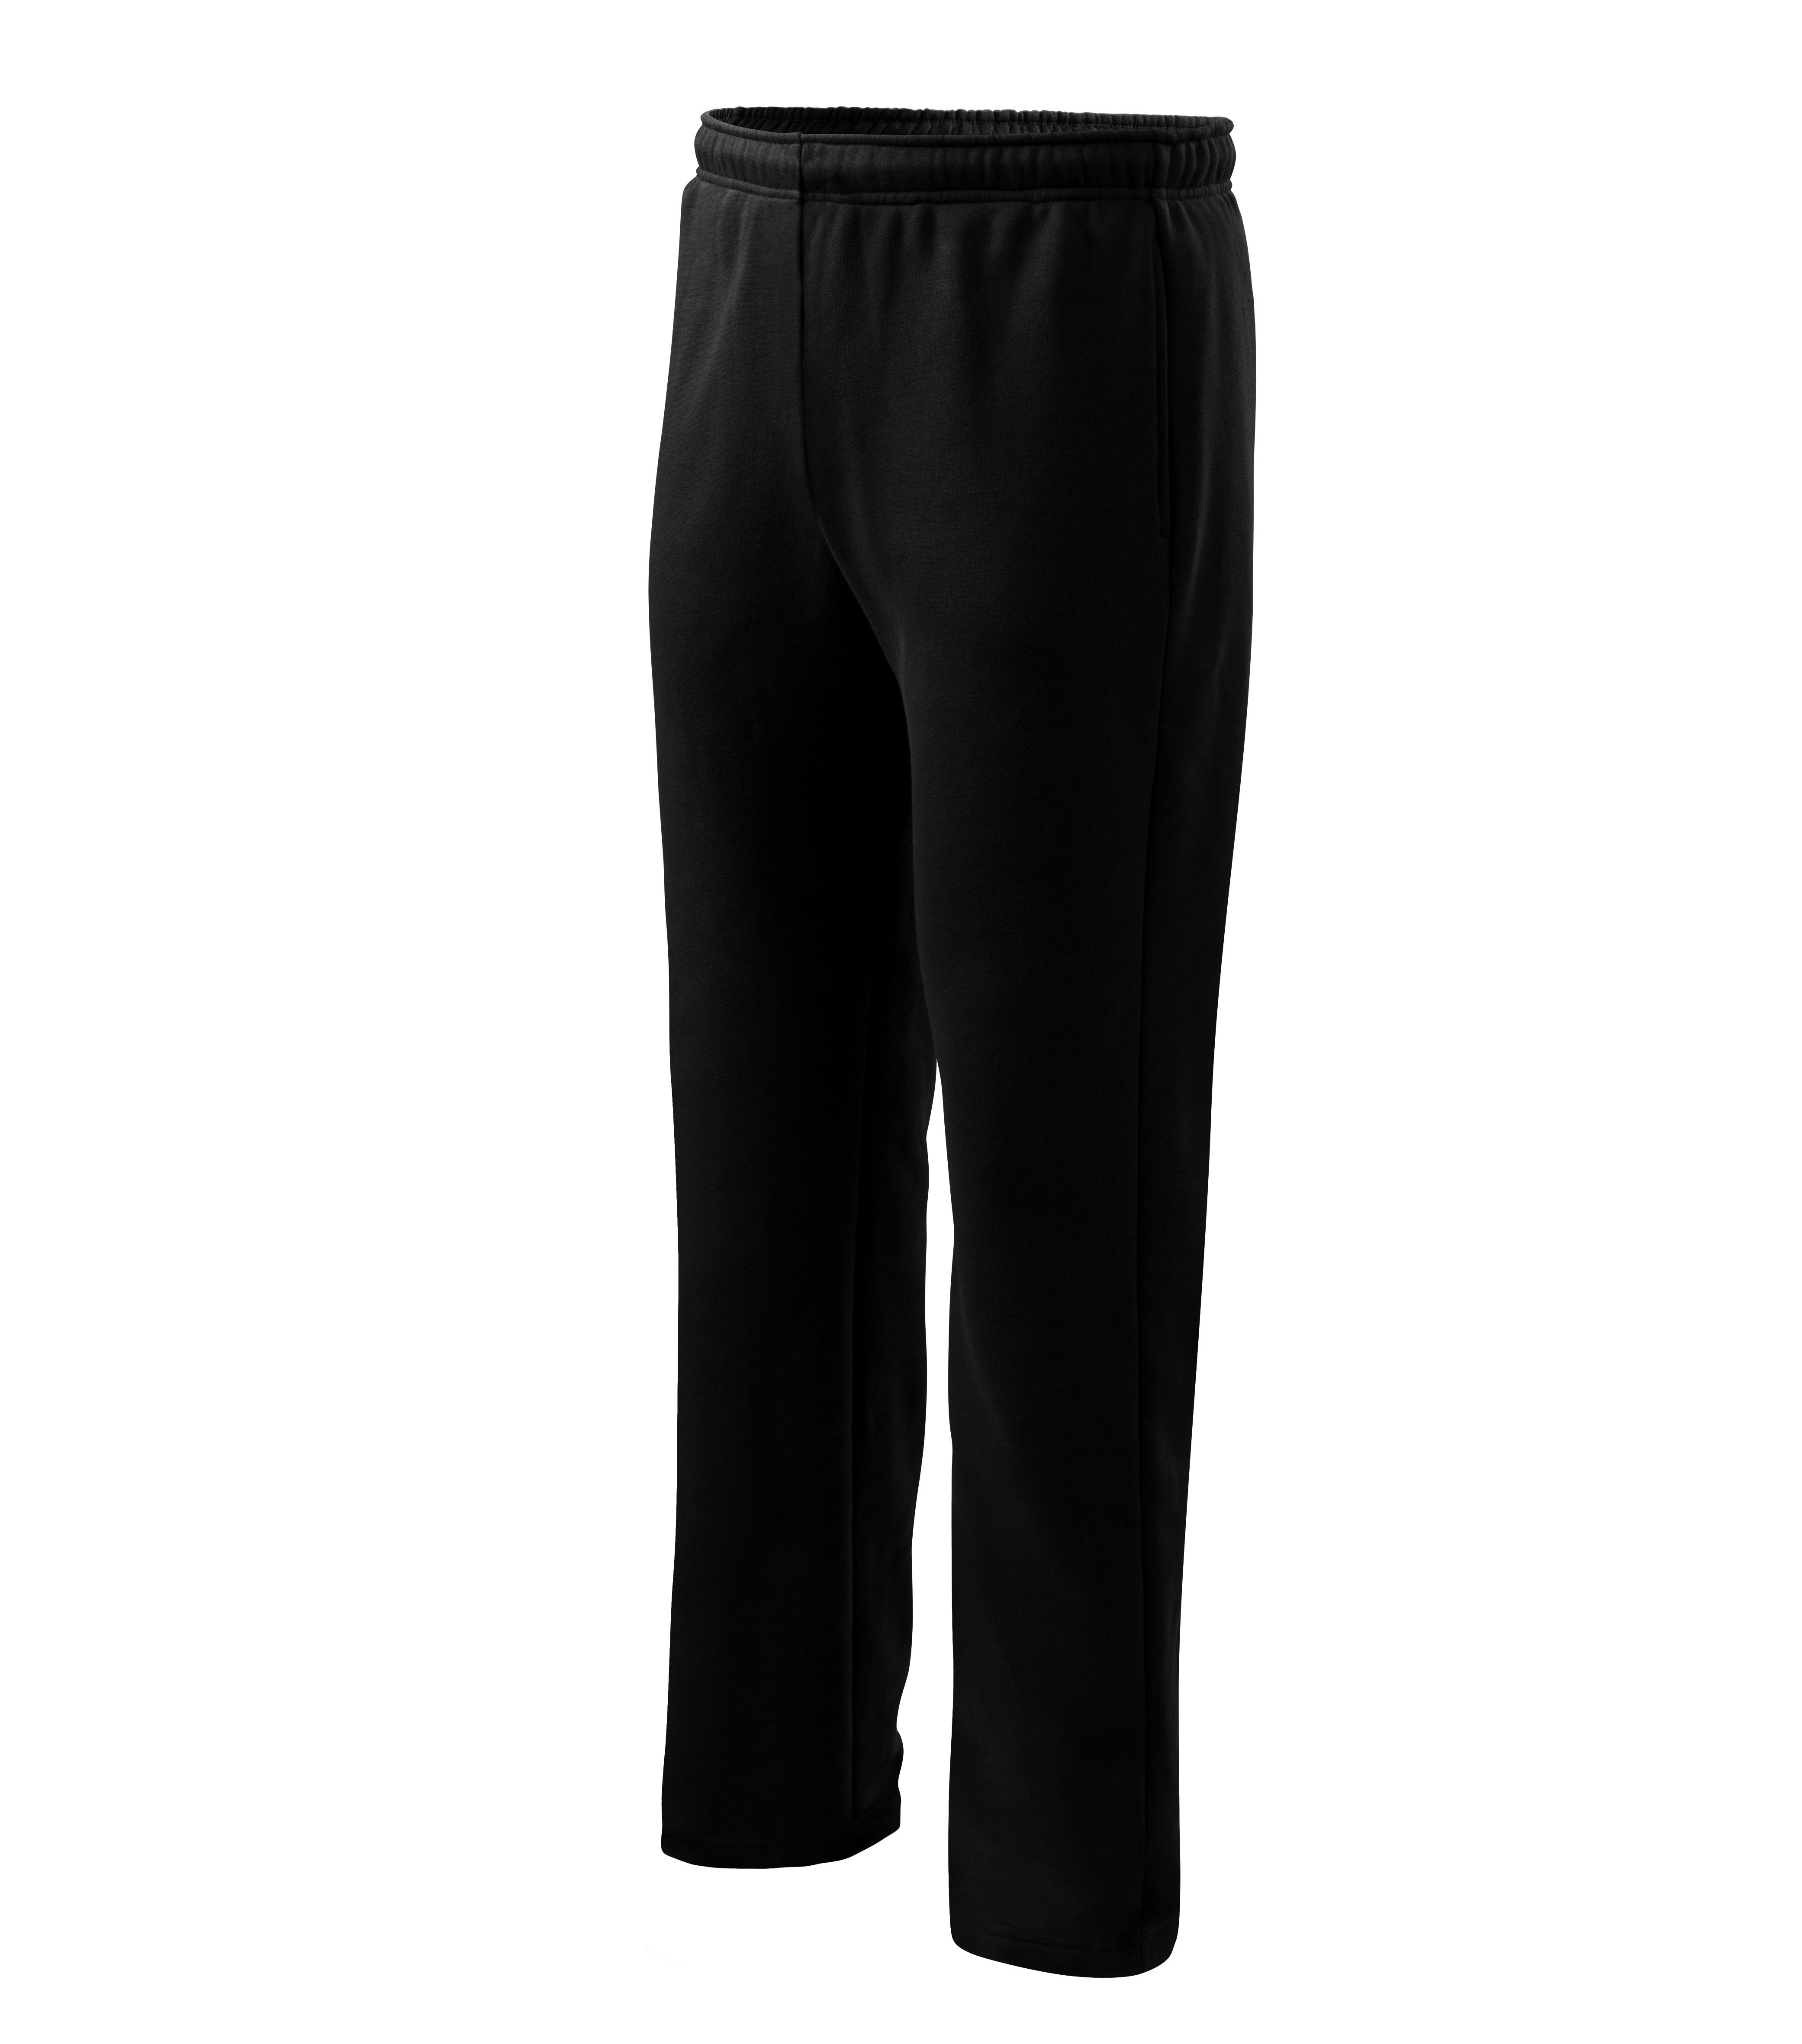 Comfort pantaloni pentru bărbaţi/copii 158 cm/12 ani in Diferite culori si dimensiuni B1021